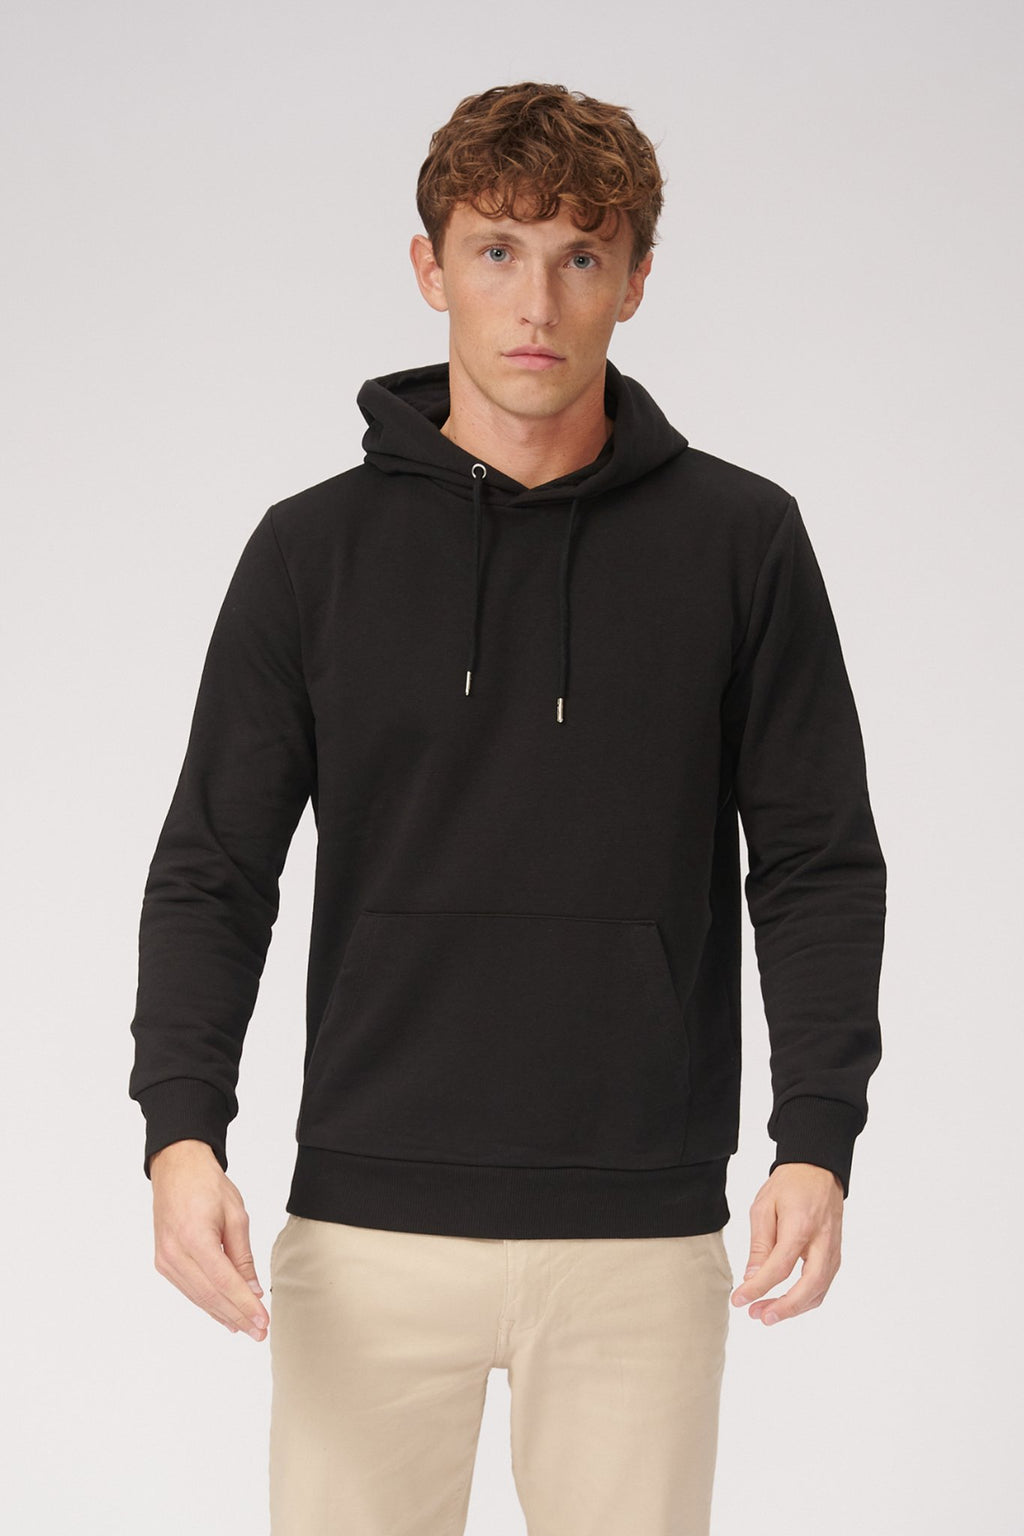 Basic Sweatsuit mit Hoodie (schwarz) - Paketgeschäft